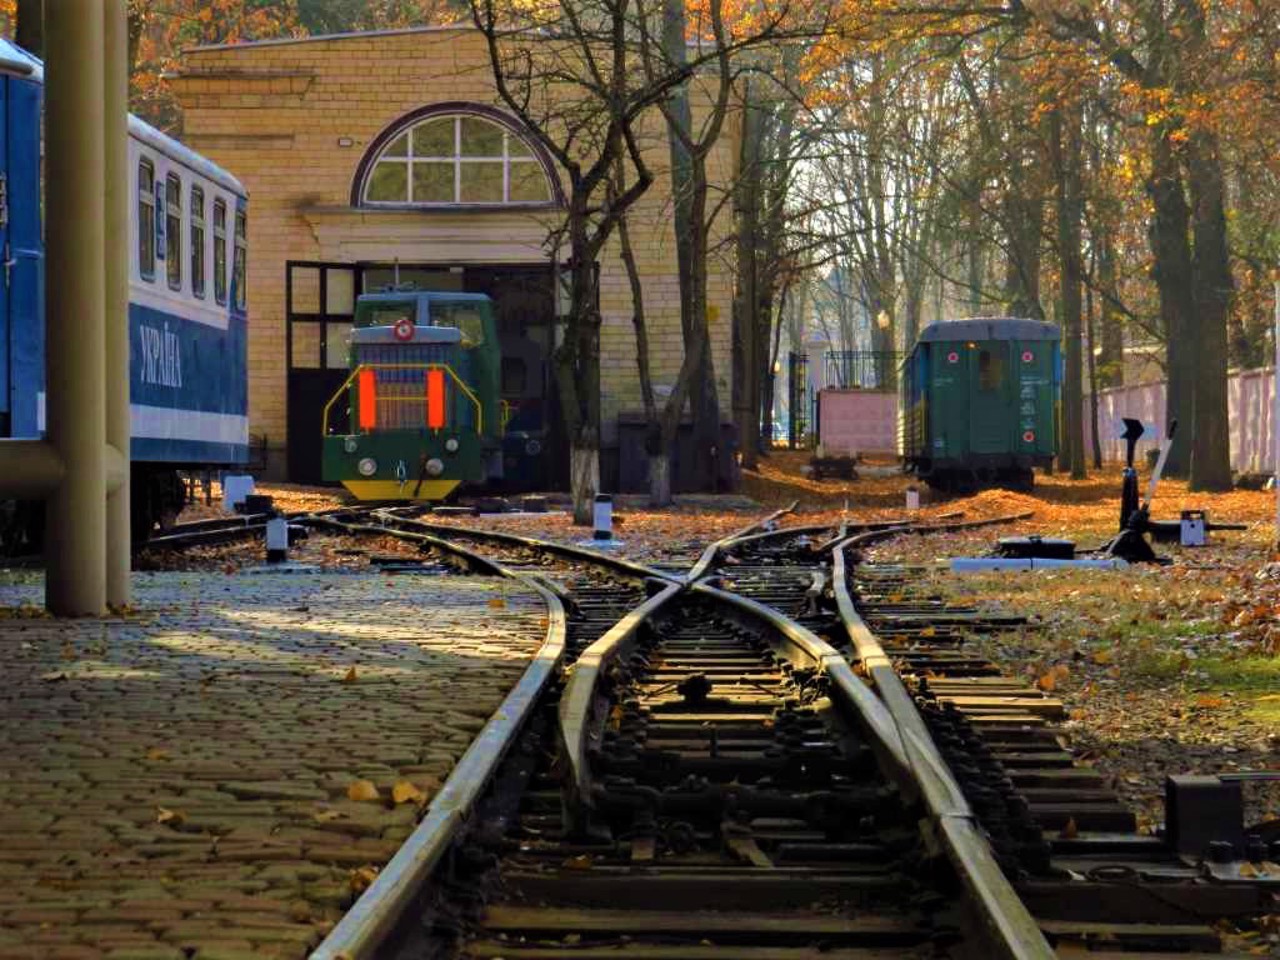 Детская железная дорога, Харьков